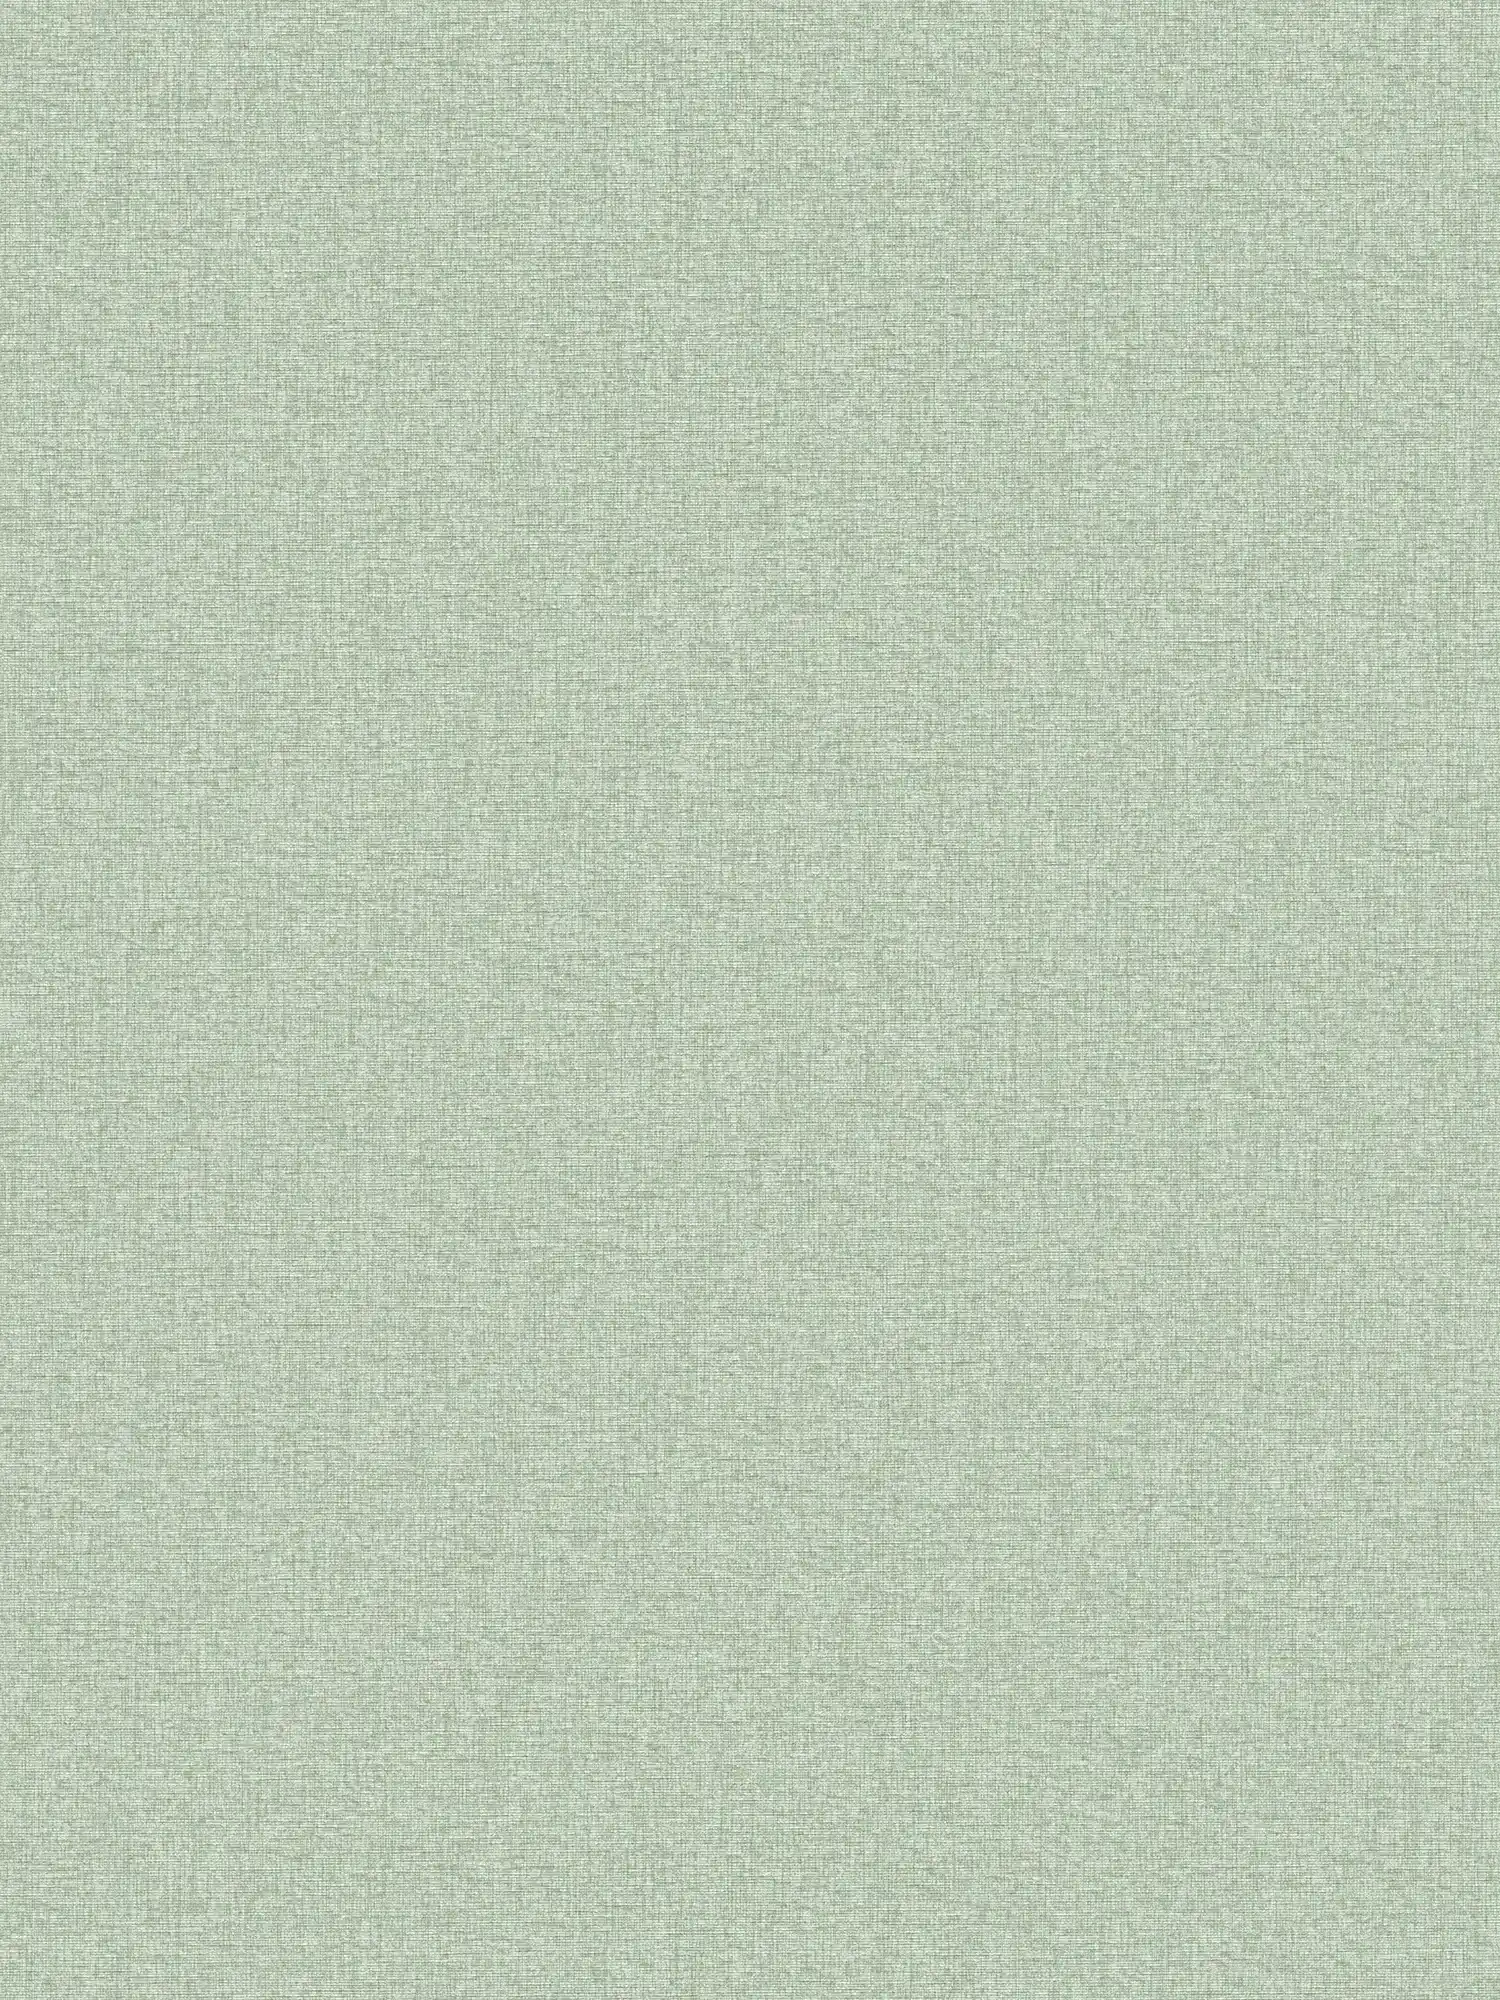 Plain wallpaper in fabric look with light structure, matt - green
